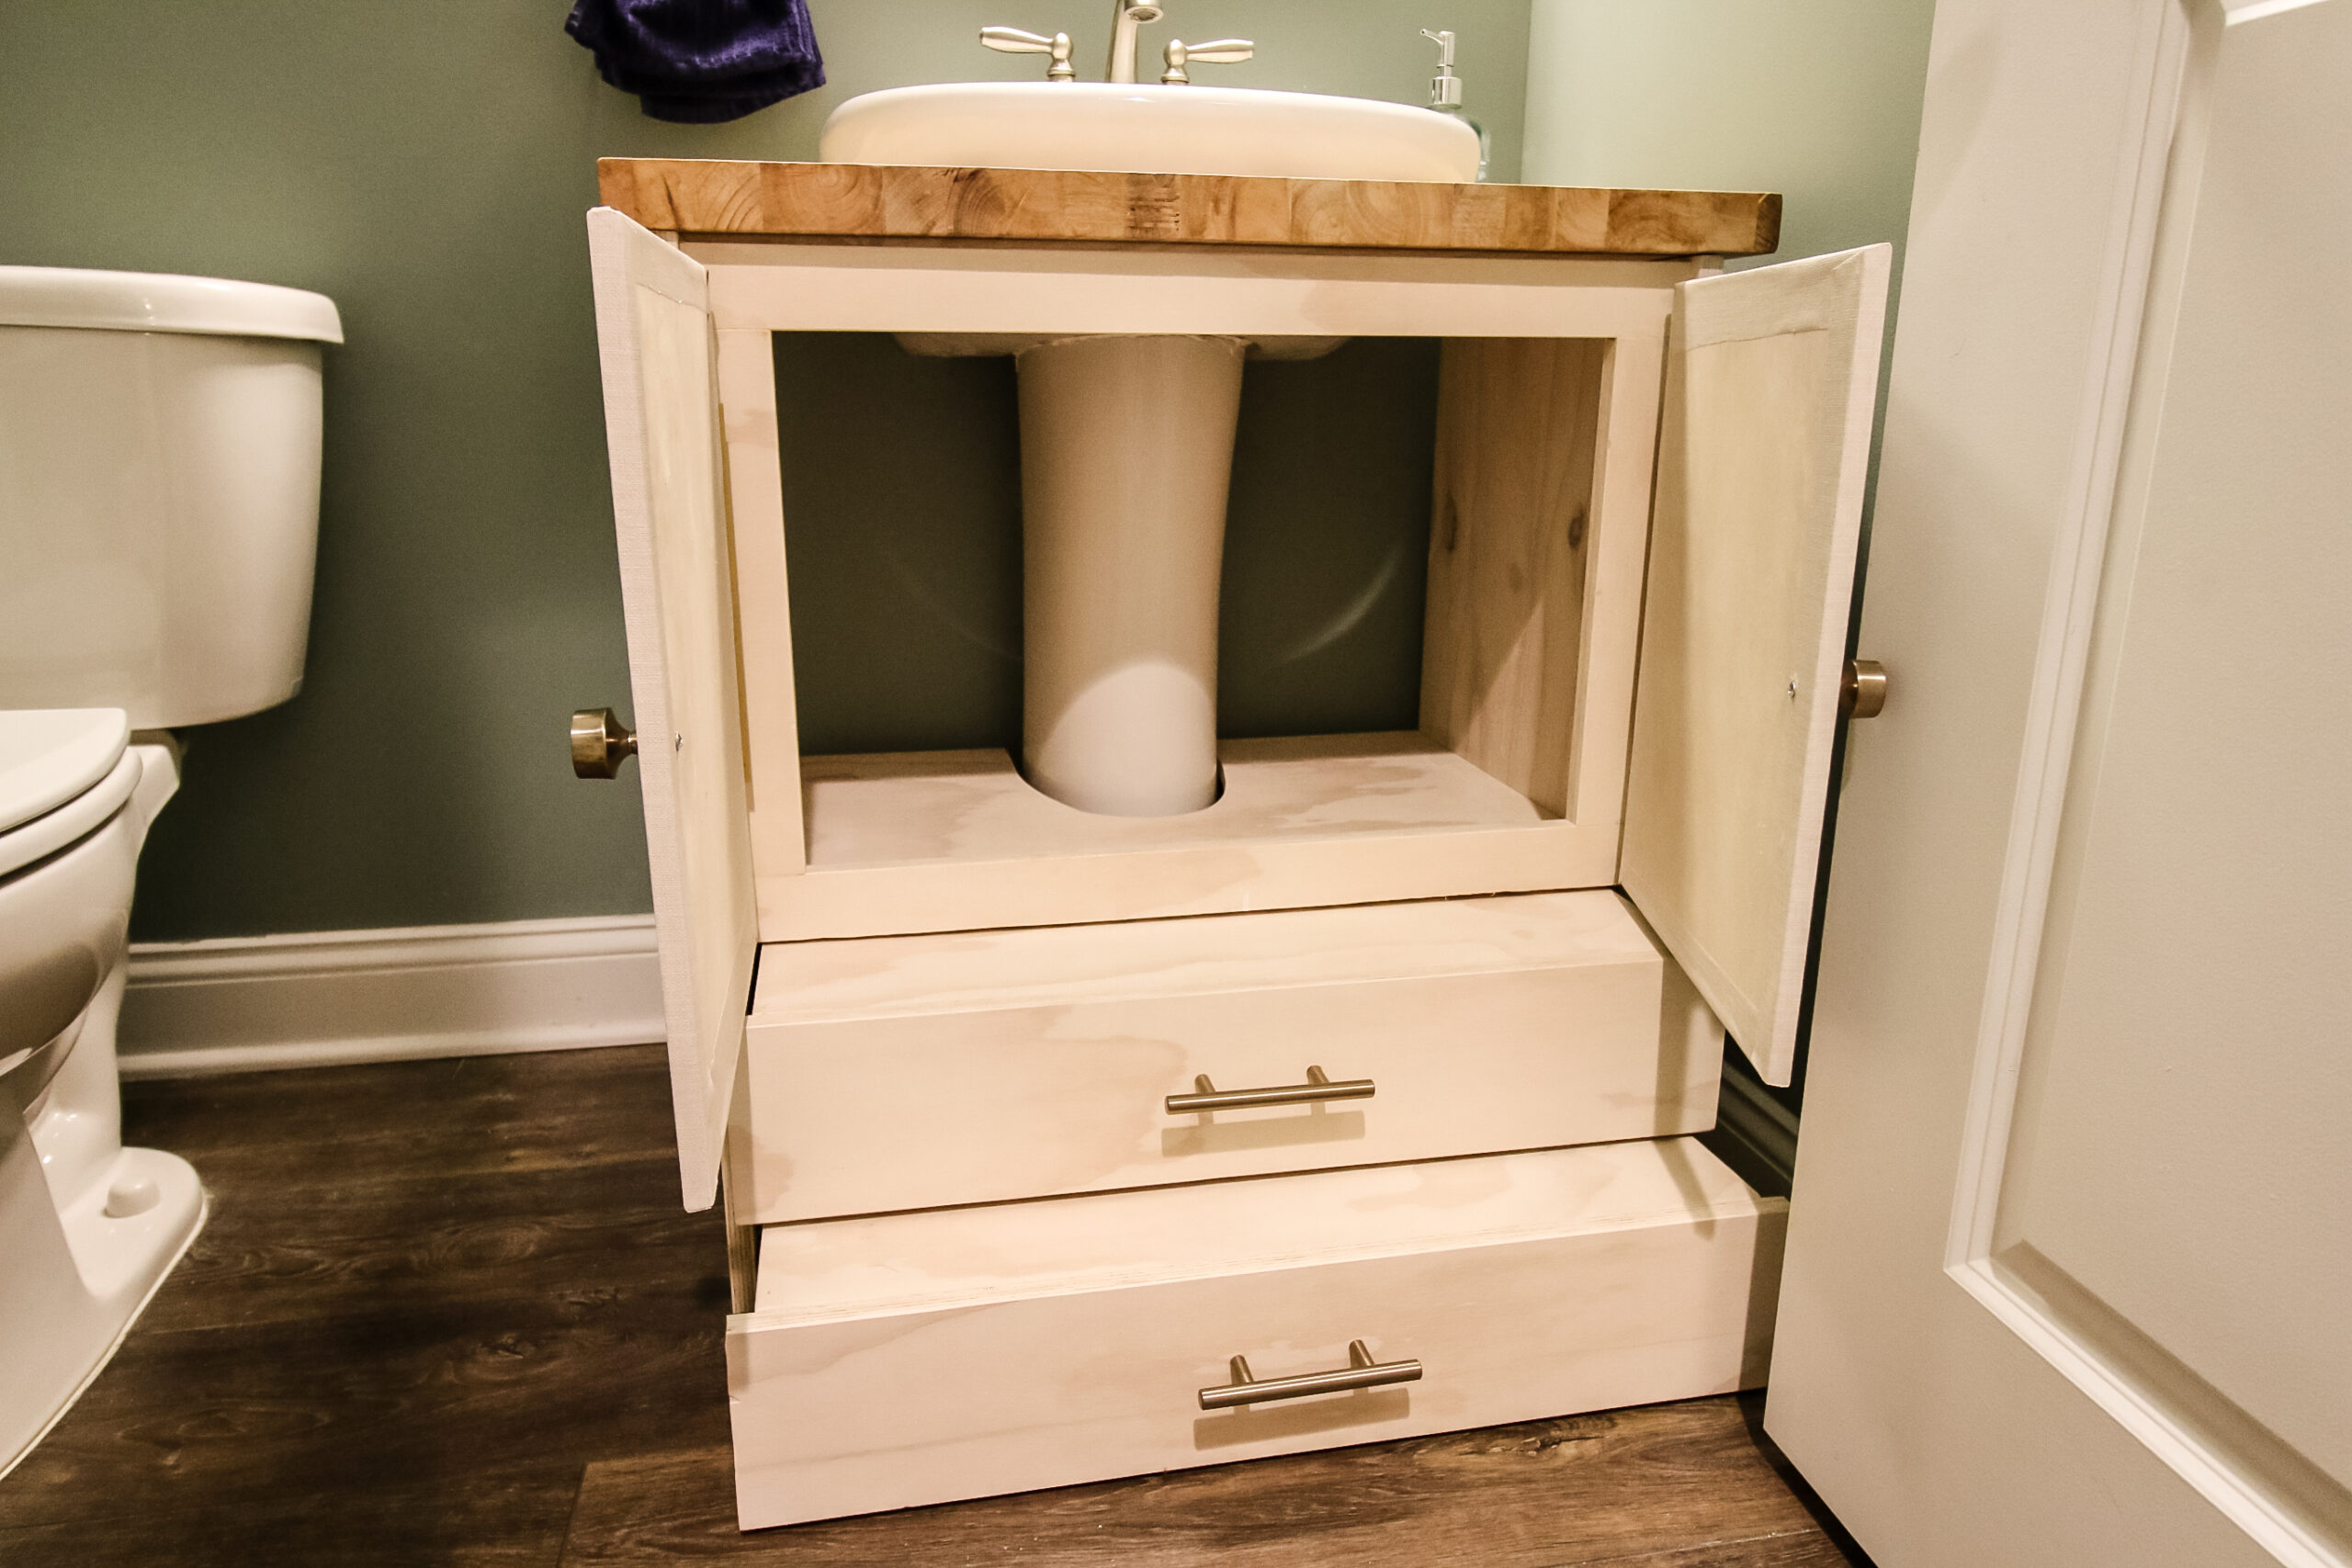 How To Build A Vanity For Pedestal Sink, Vanity Cabinet For Pedestal Sink